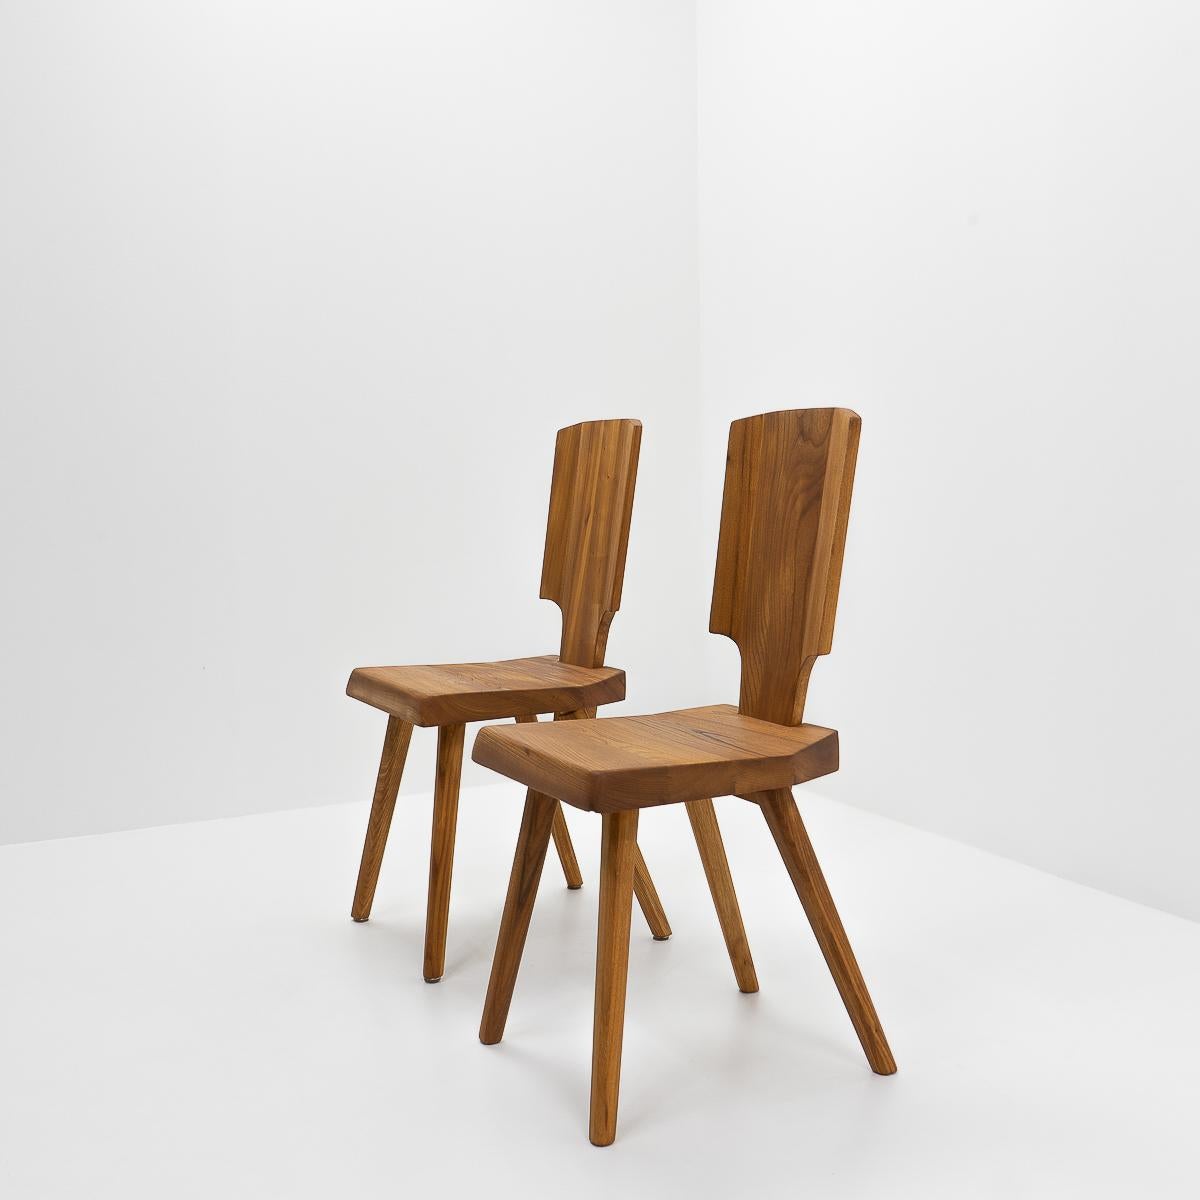 Vintage S28 Stühle aus Ulme: Laut Pierre Chapo ist der S28 eine moderne Interpretation des traditionellen elsässischen Stuhles, der von allen dekorativen Elementen befreit wurde, ohne dabei seinen Komfort und seine Silhouette zu verlieren.

Wie